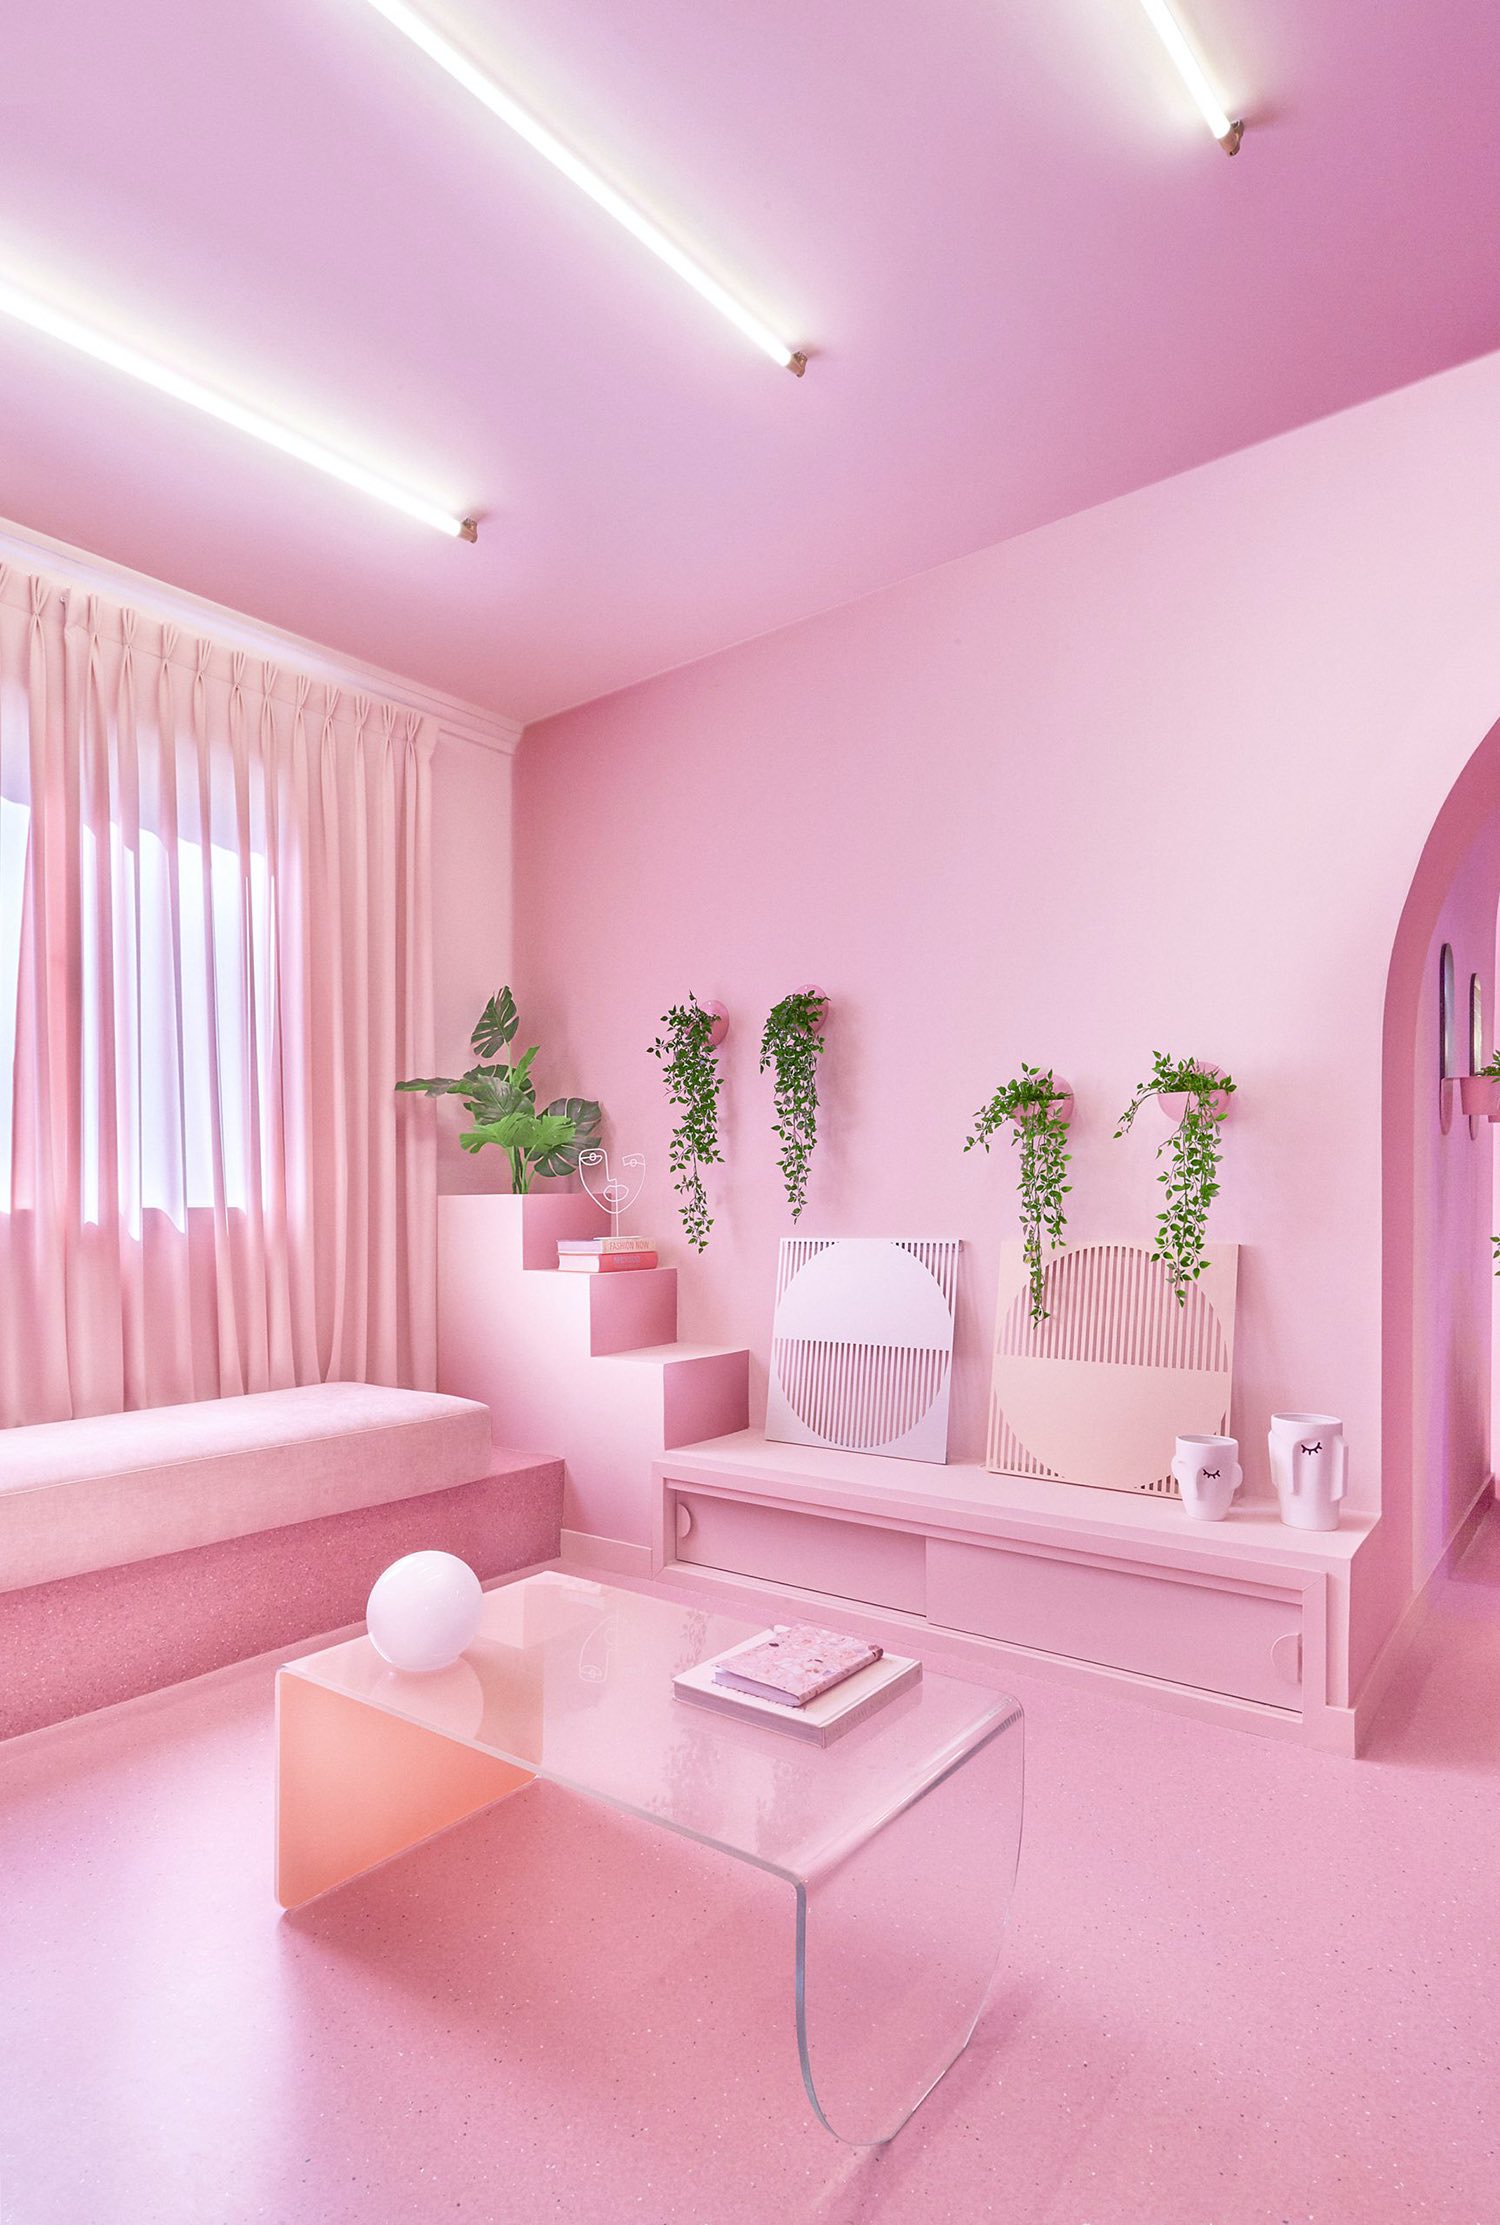 Комната в розовых тонах. Розовая комната. Интерьер в ореховых тонах. Розовый интерьер. Розовый цвет в интерьере.